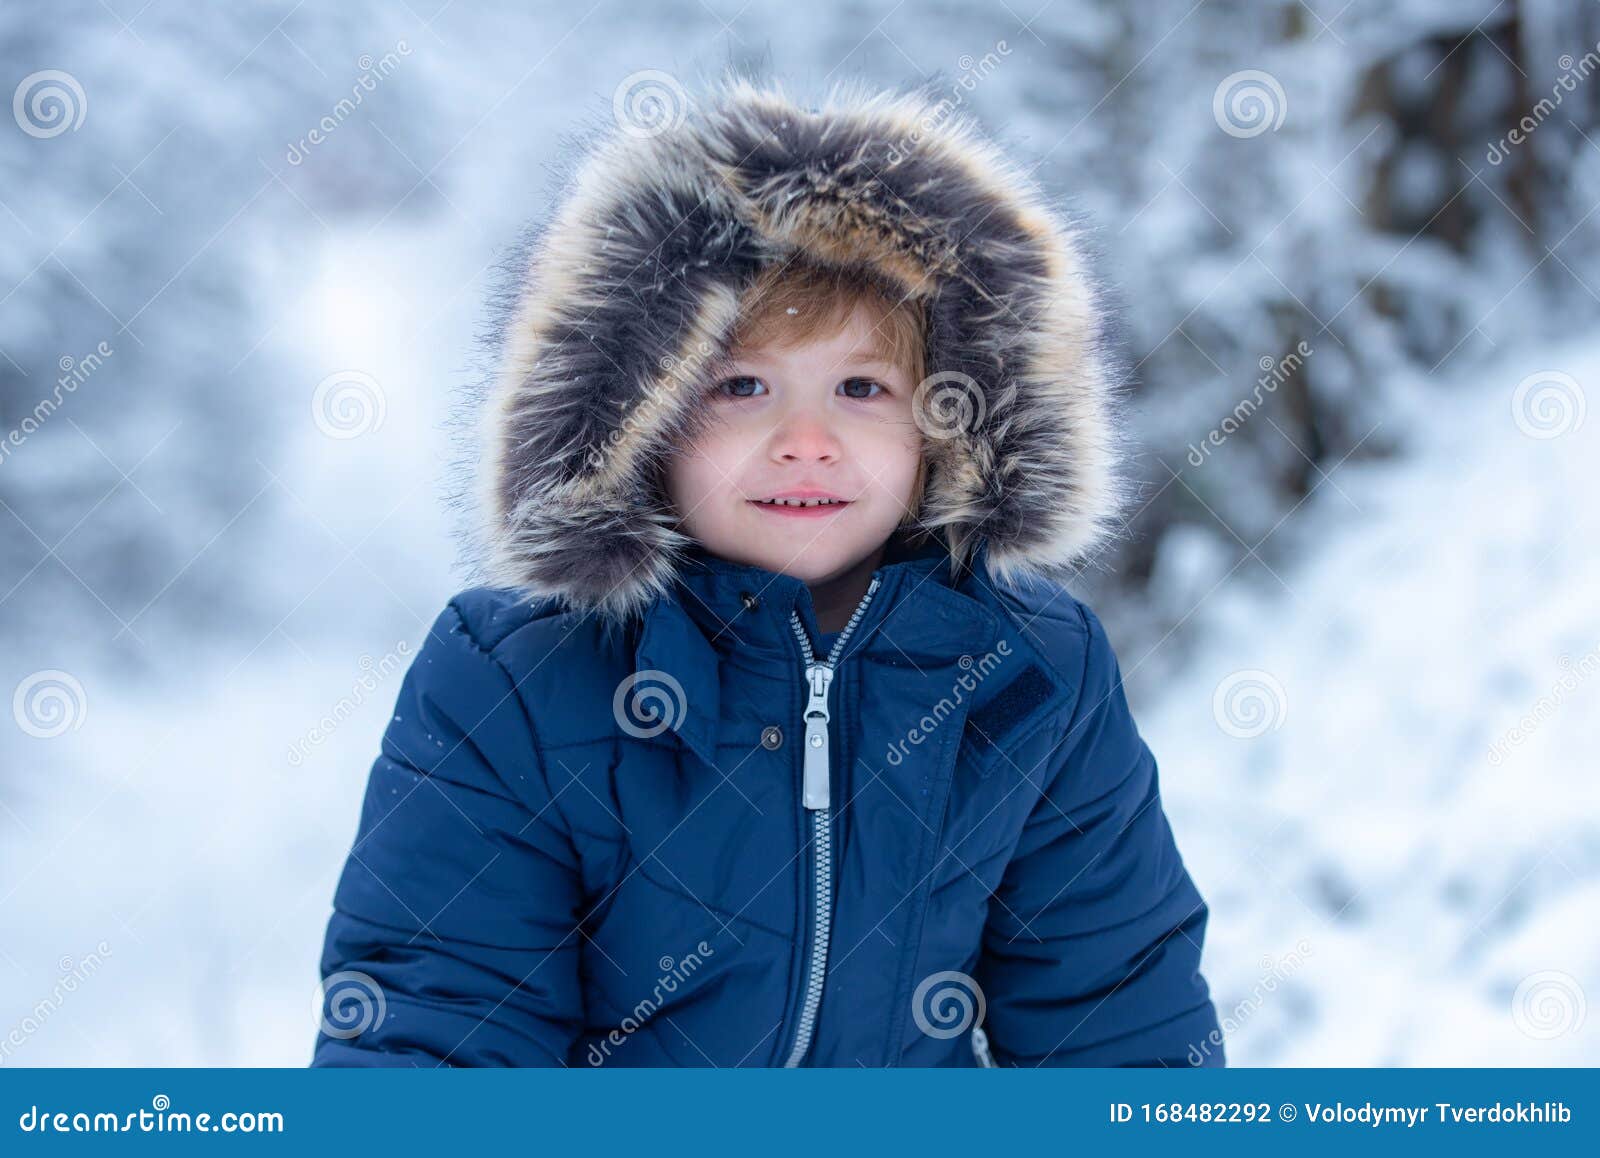 Actualizar 95+ imagen ropa de nieve para niños